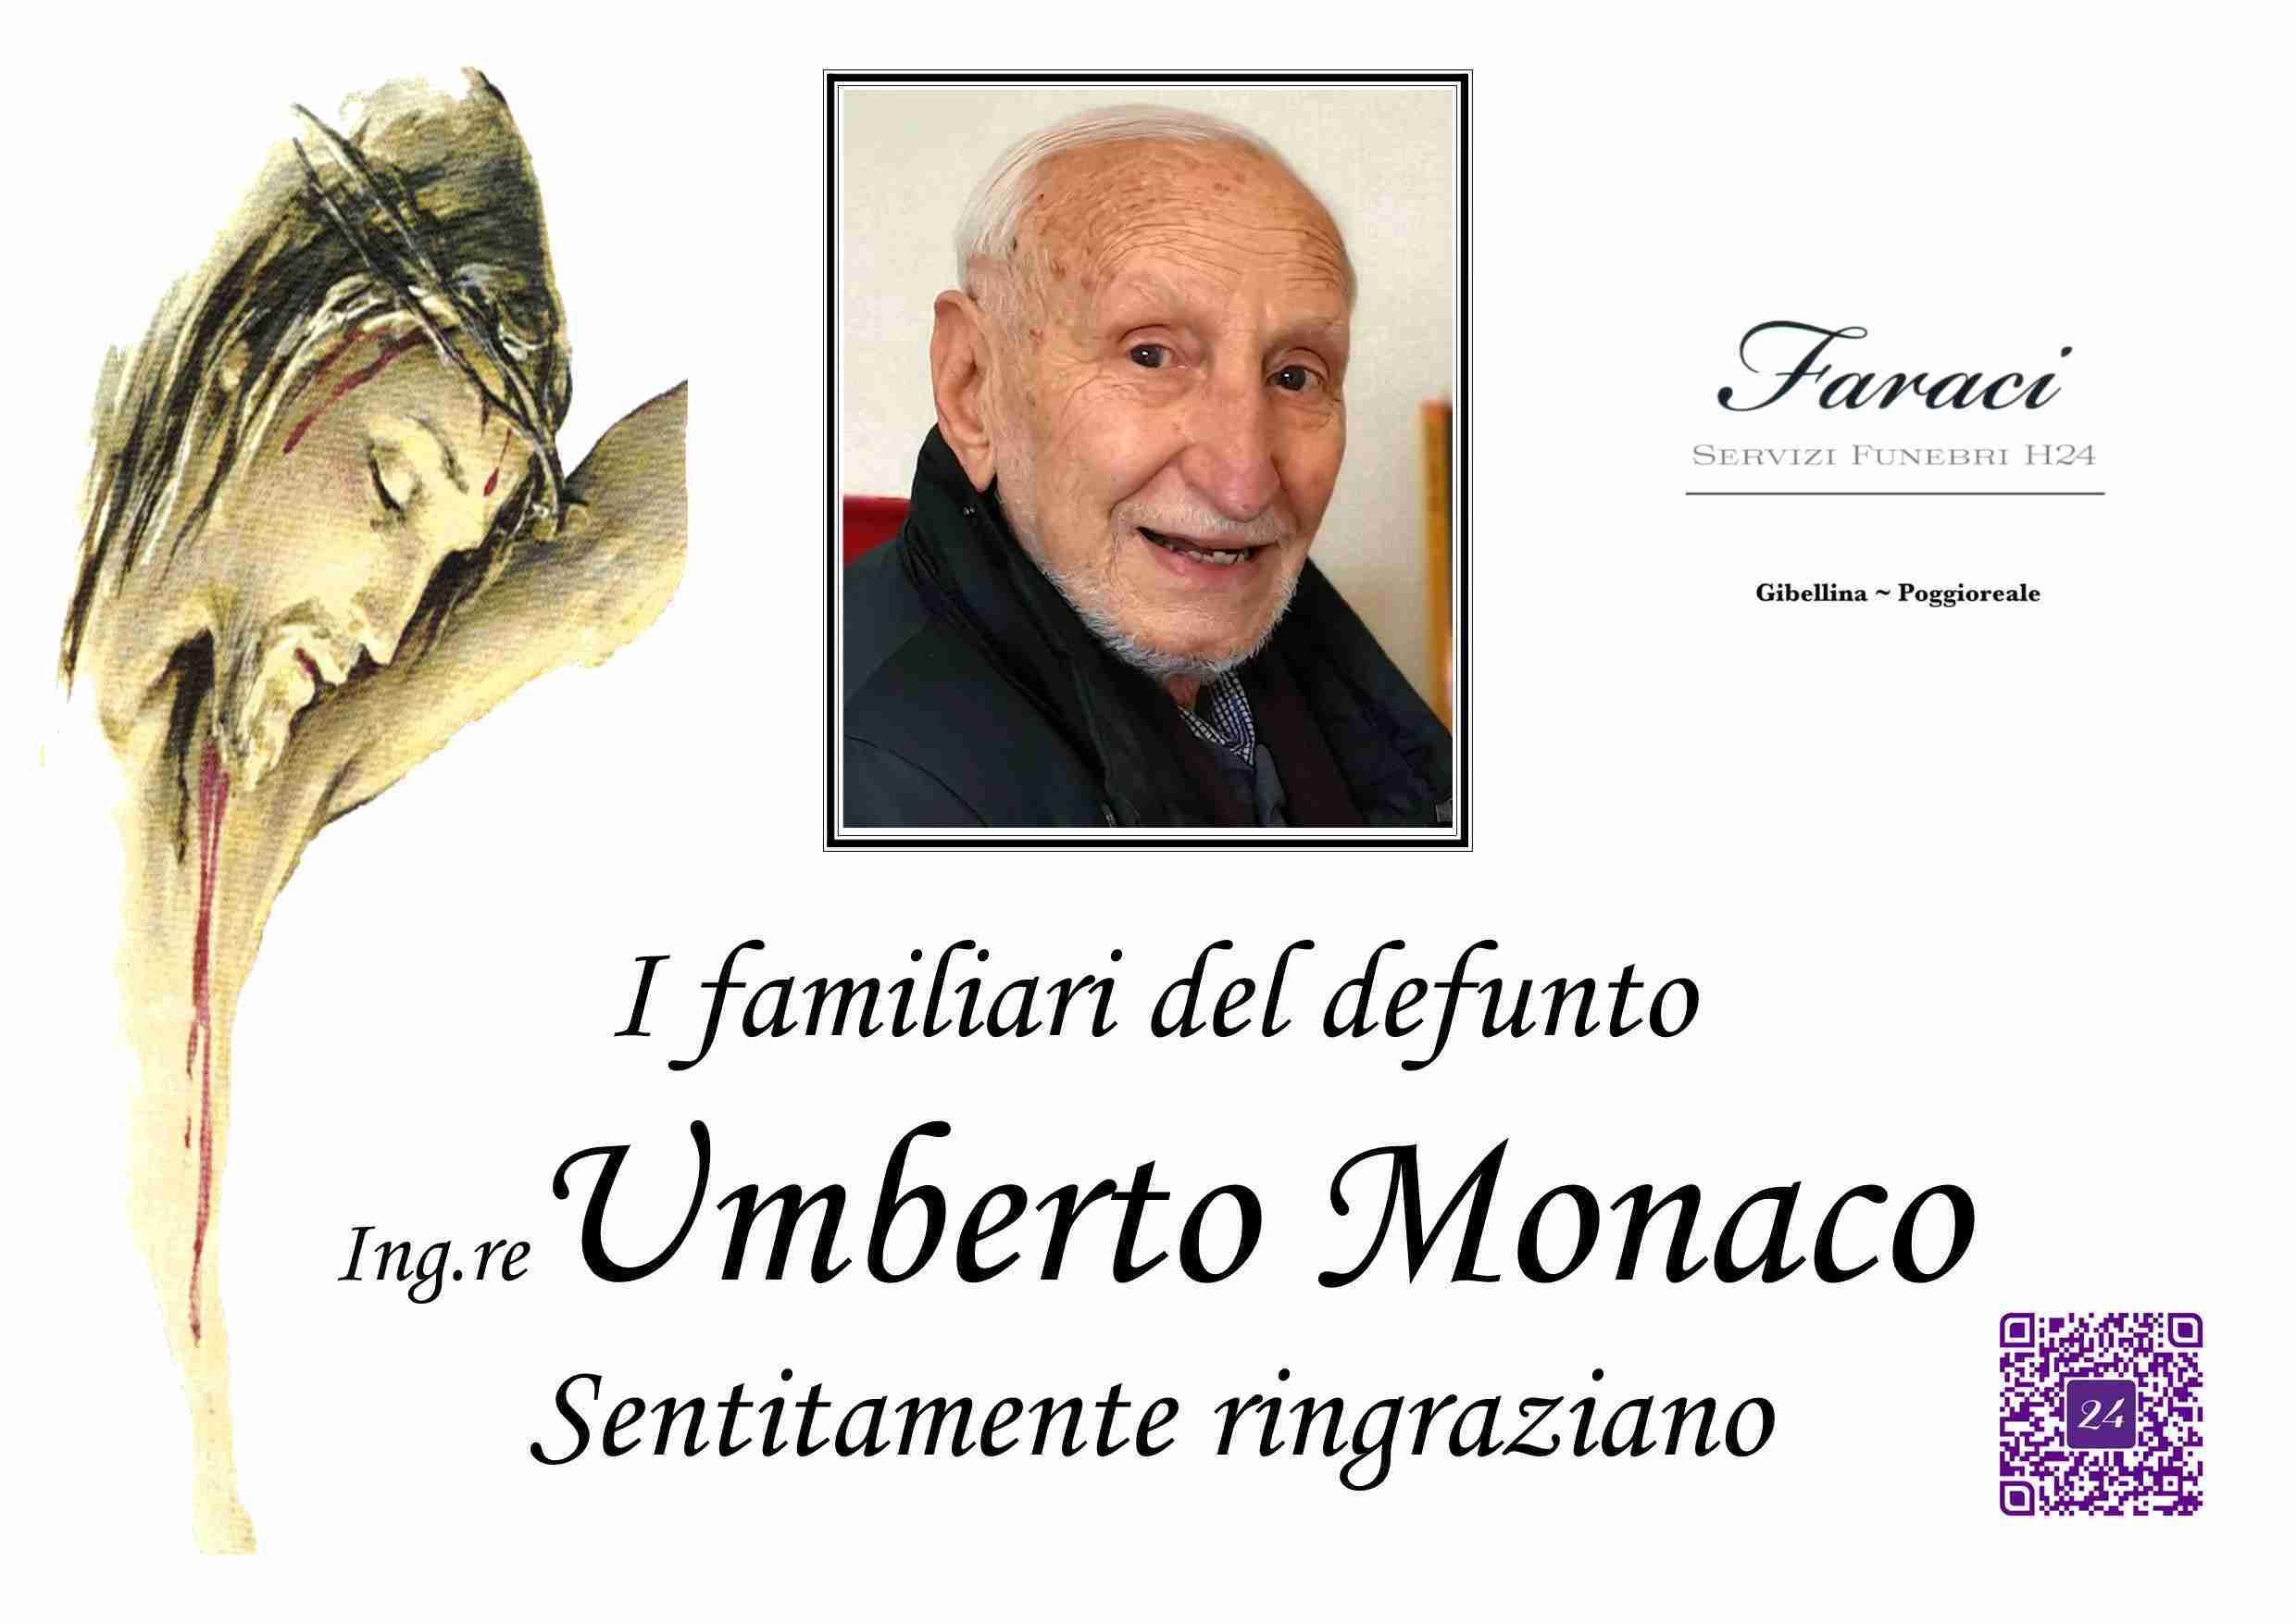 Umberto Monaco